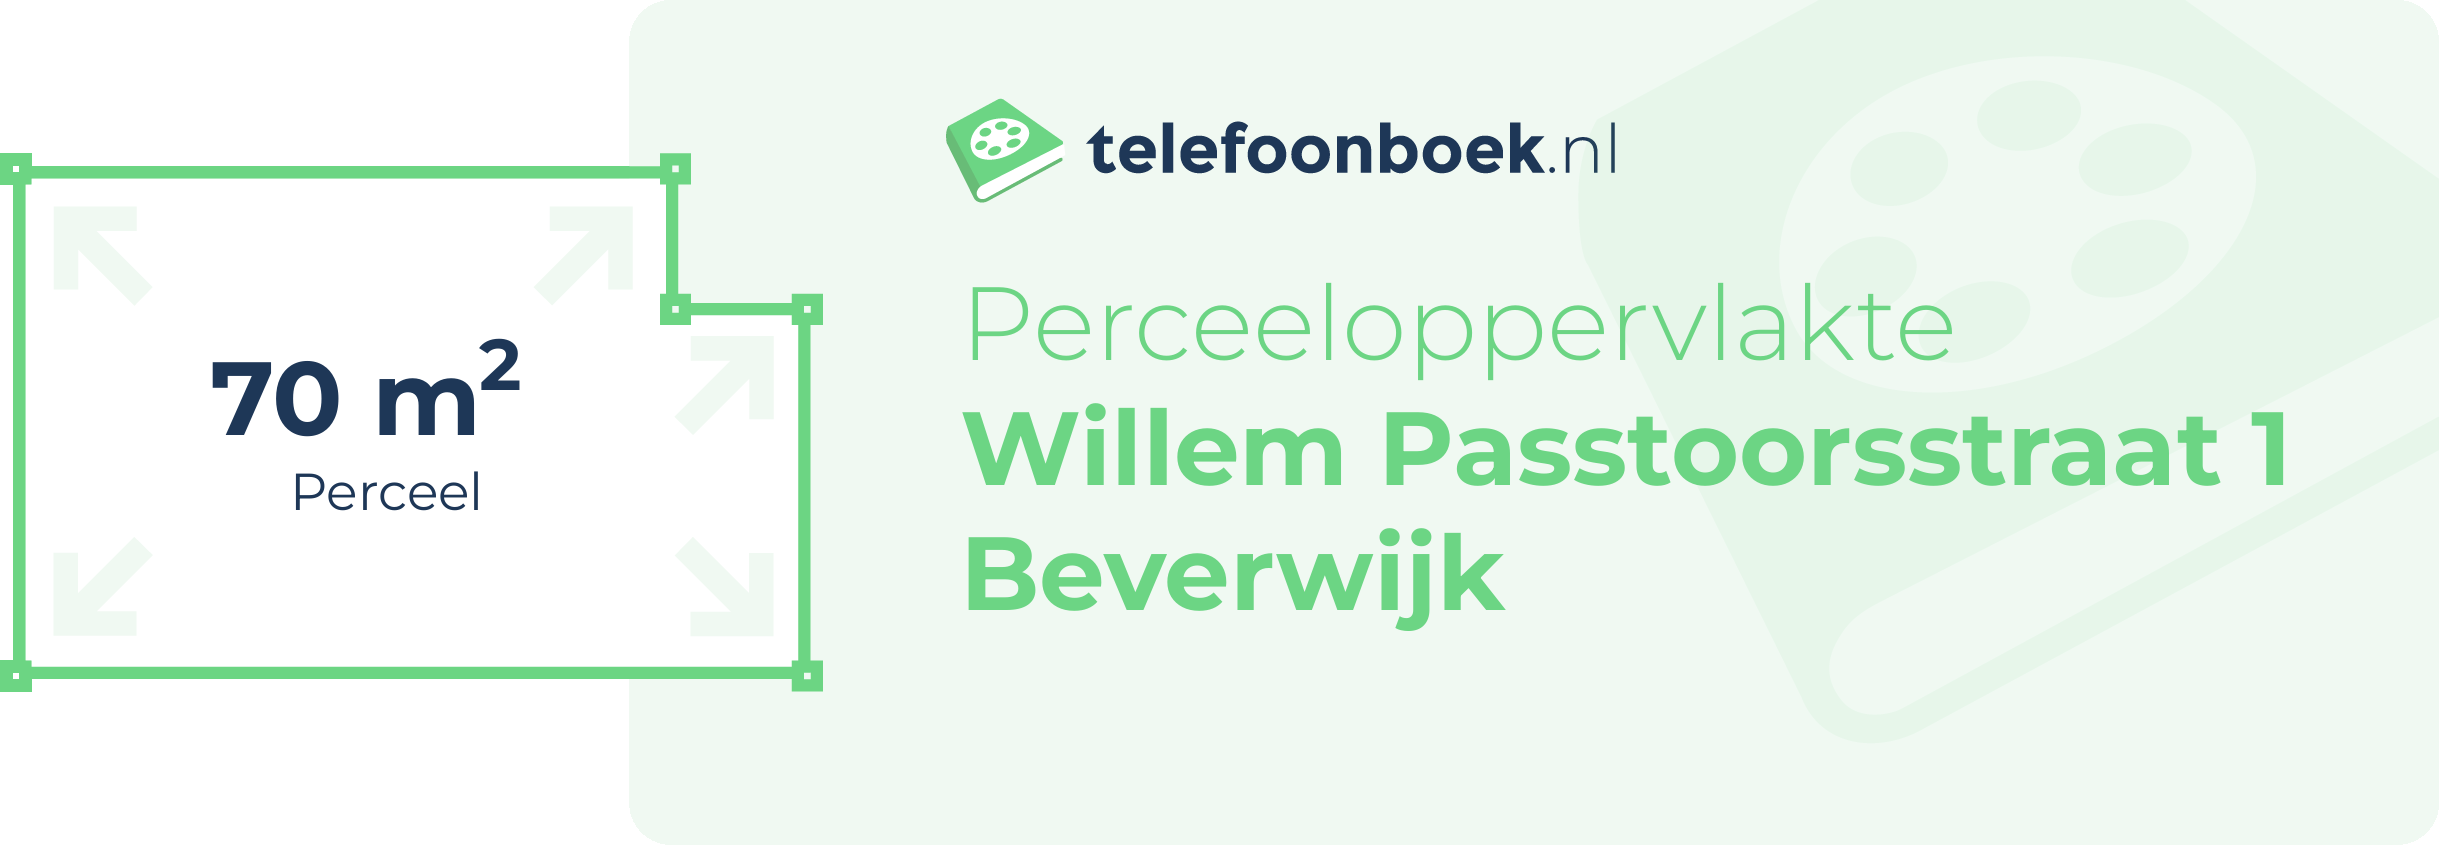 Perceeloppervlakte Willem Passtoorsstraat 1 Beverwijk